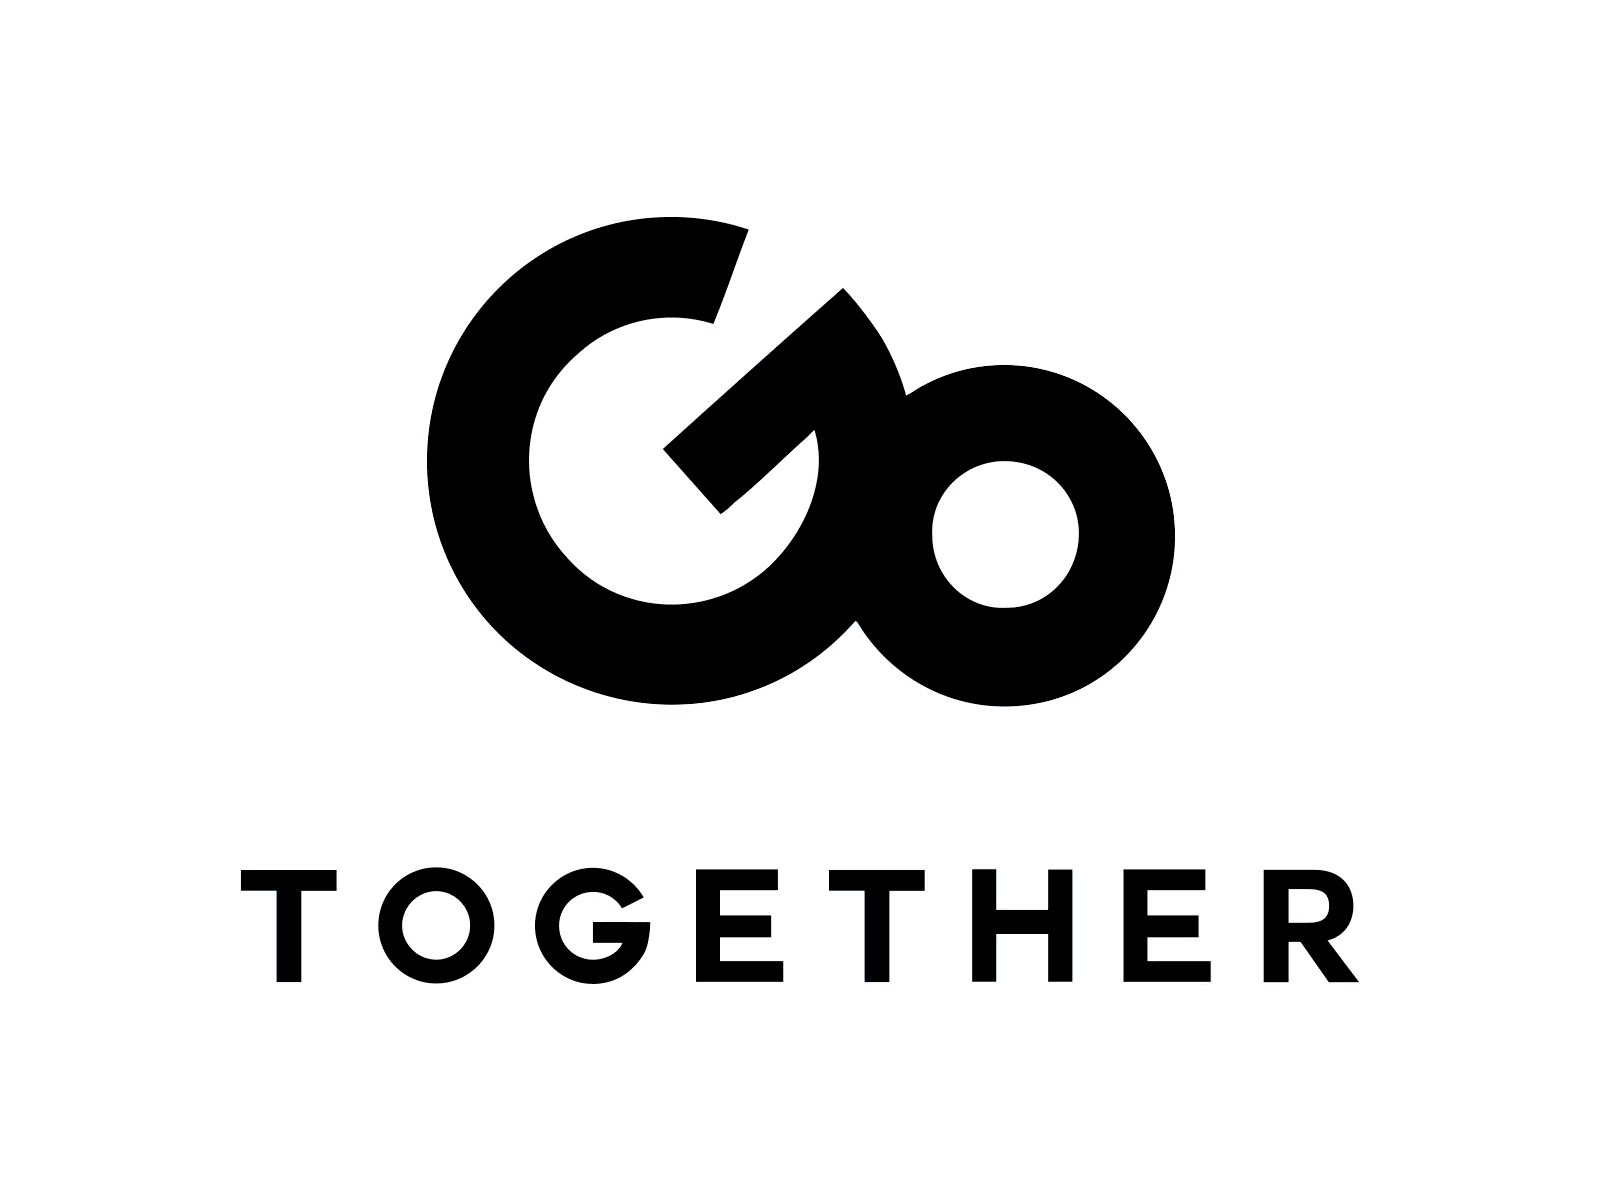 Go Together animation branding design illustration logo motion design